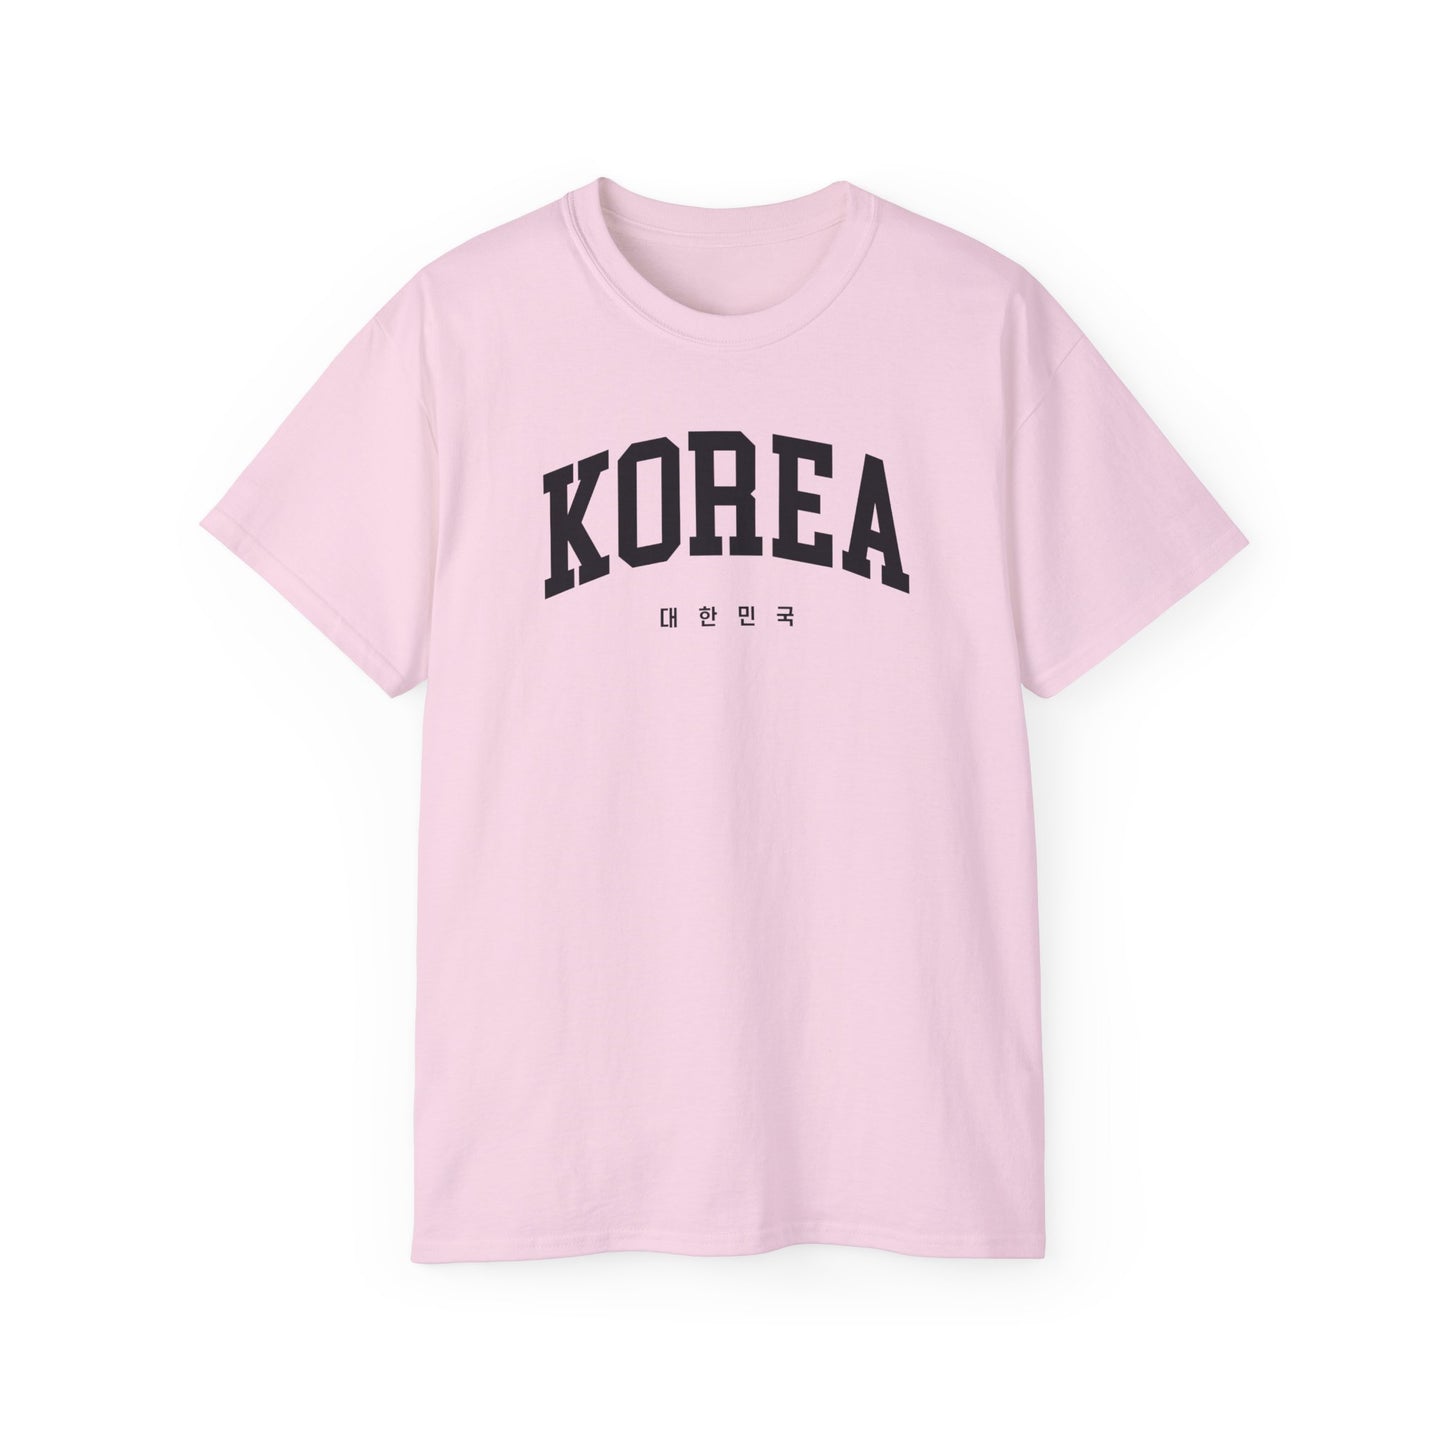 Korea Tee